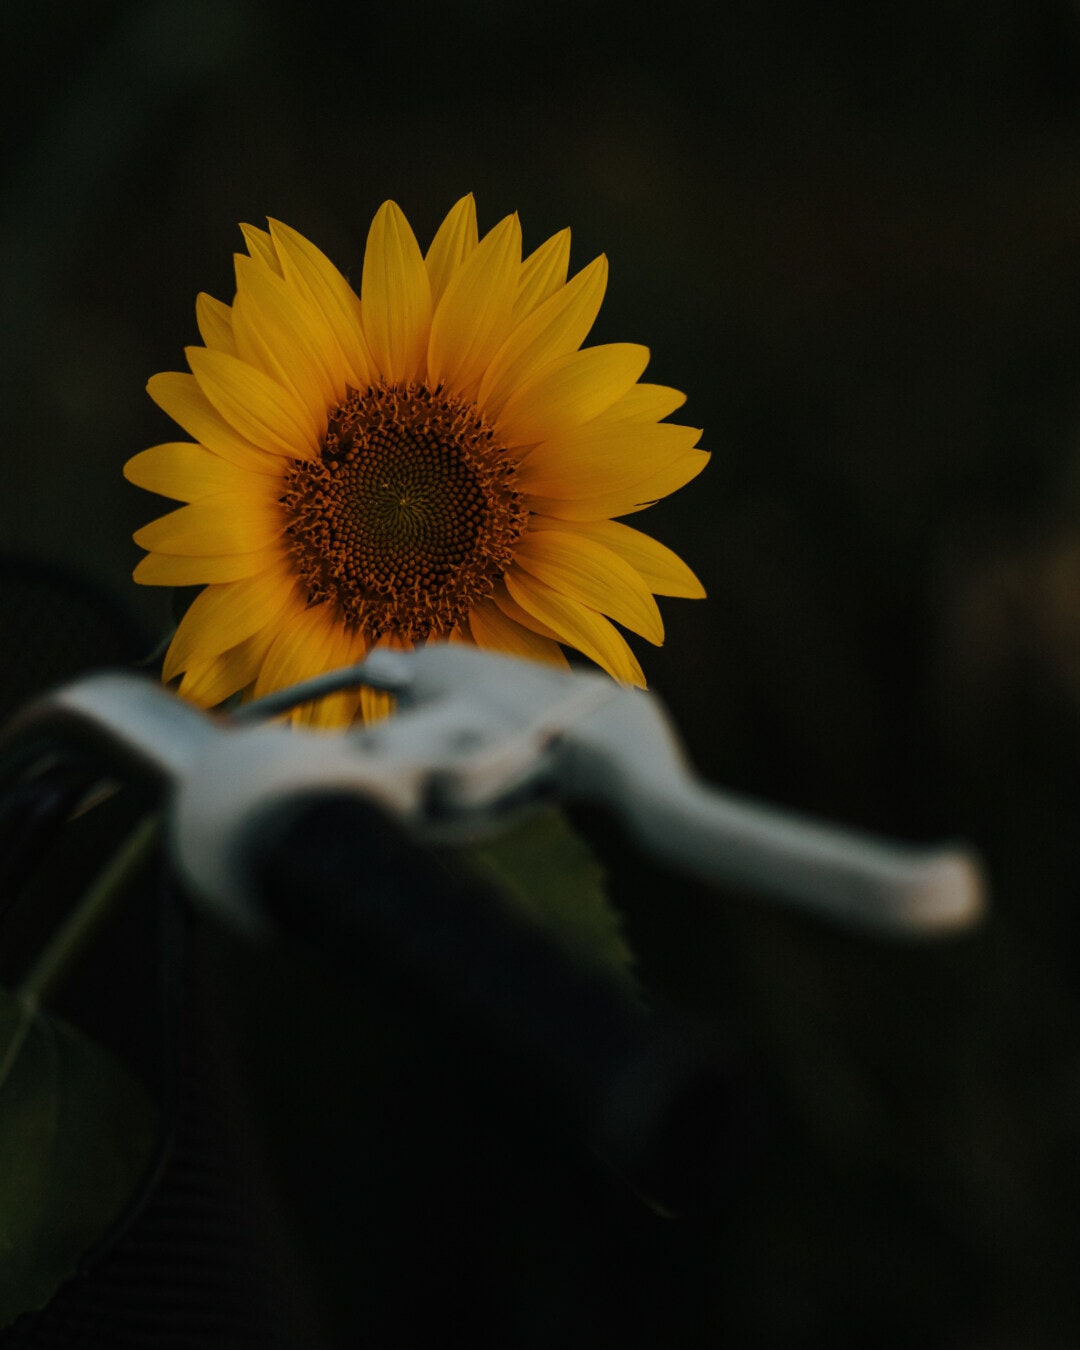 kegelapan, fokus, bunga matahari, roda kemudi, sepeda, rem, kuning, bunga, di luar rumah, cuaca cerah